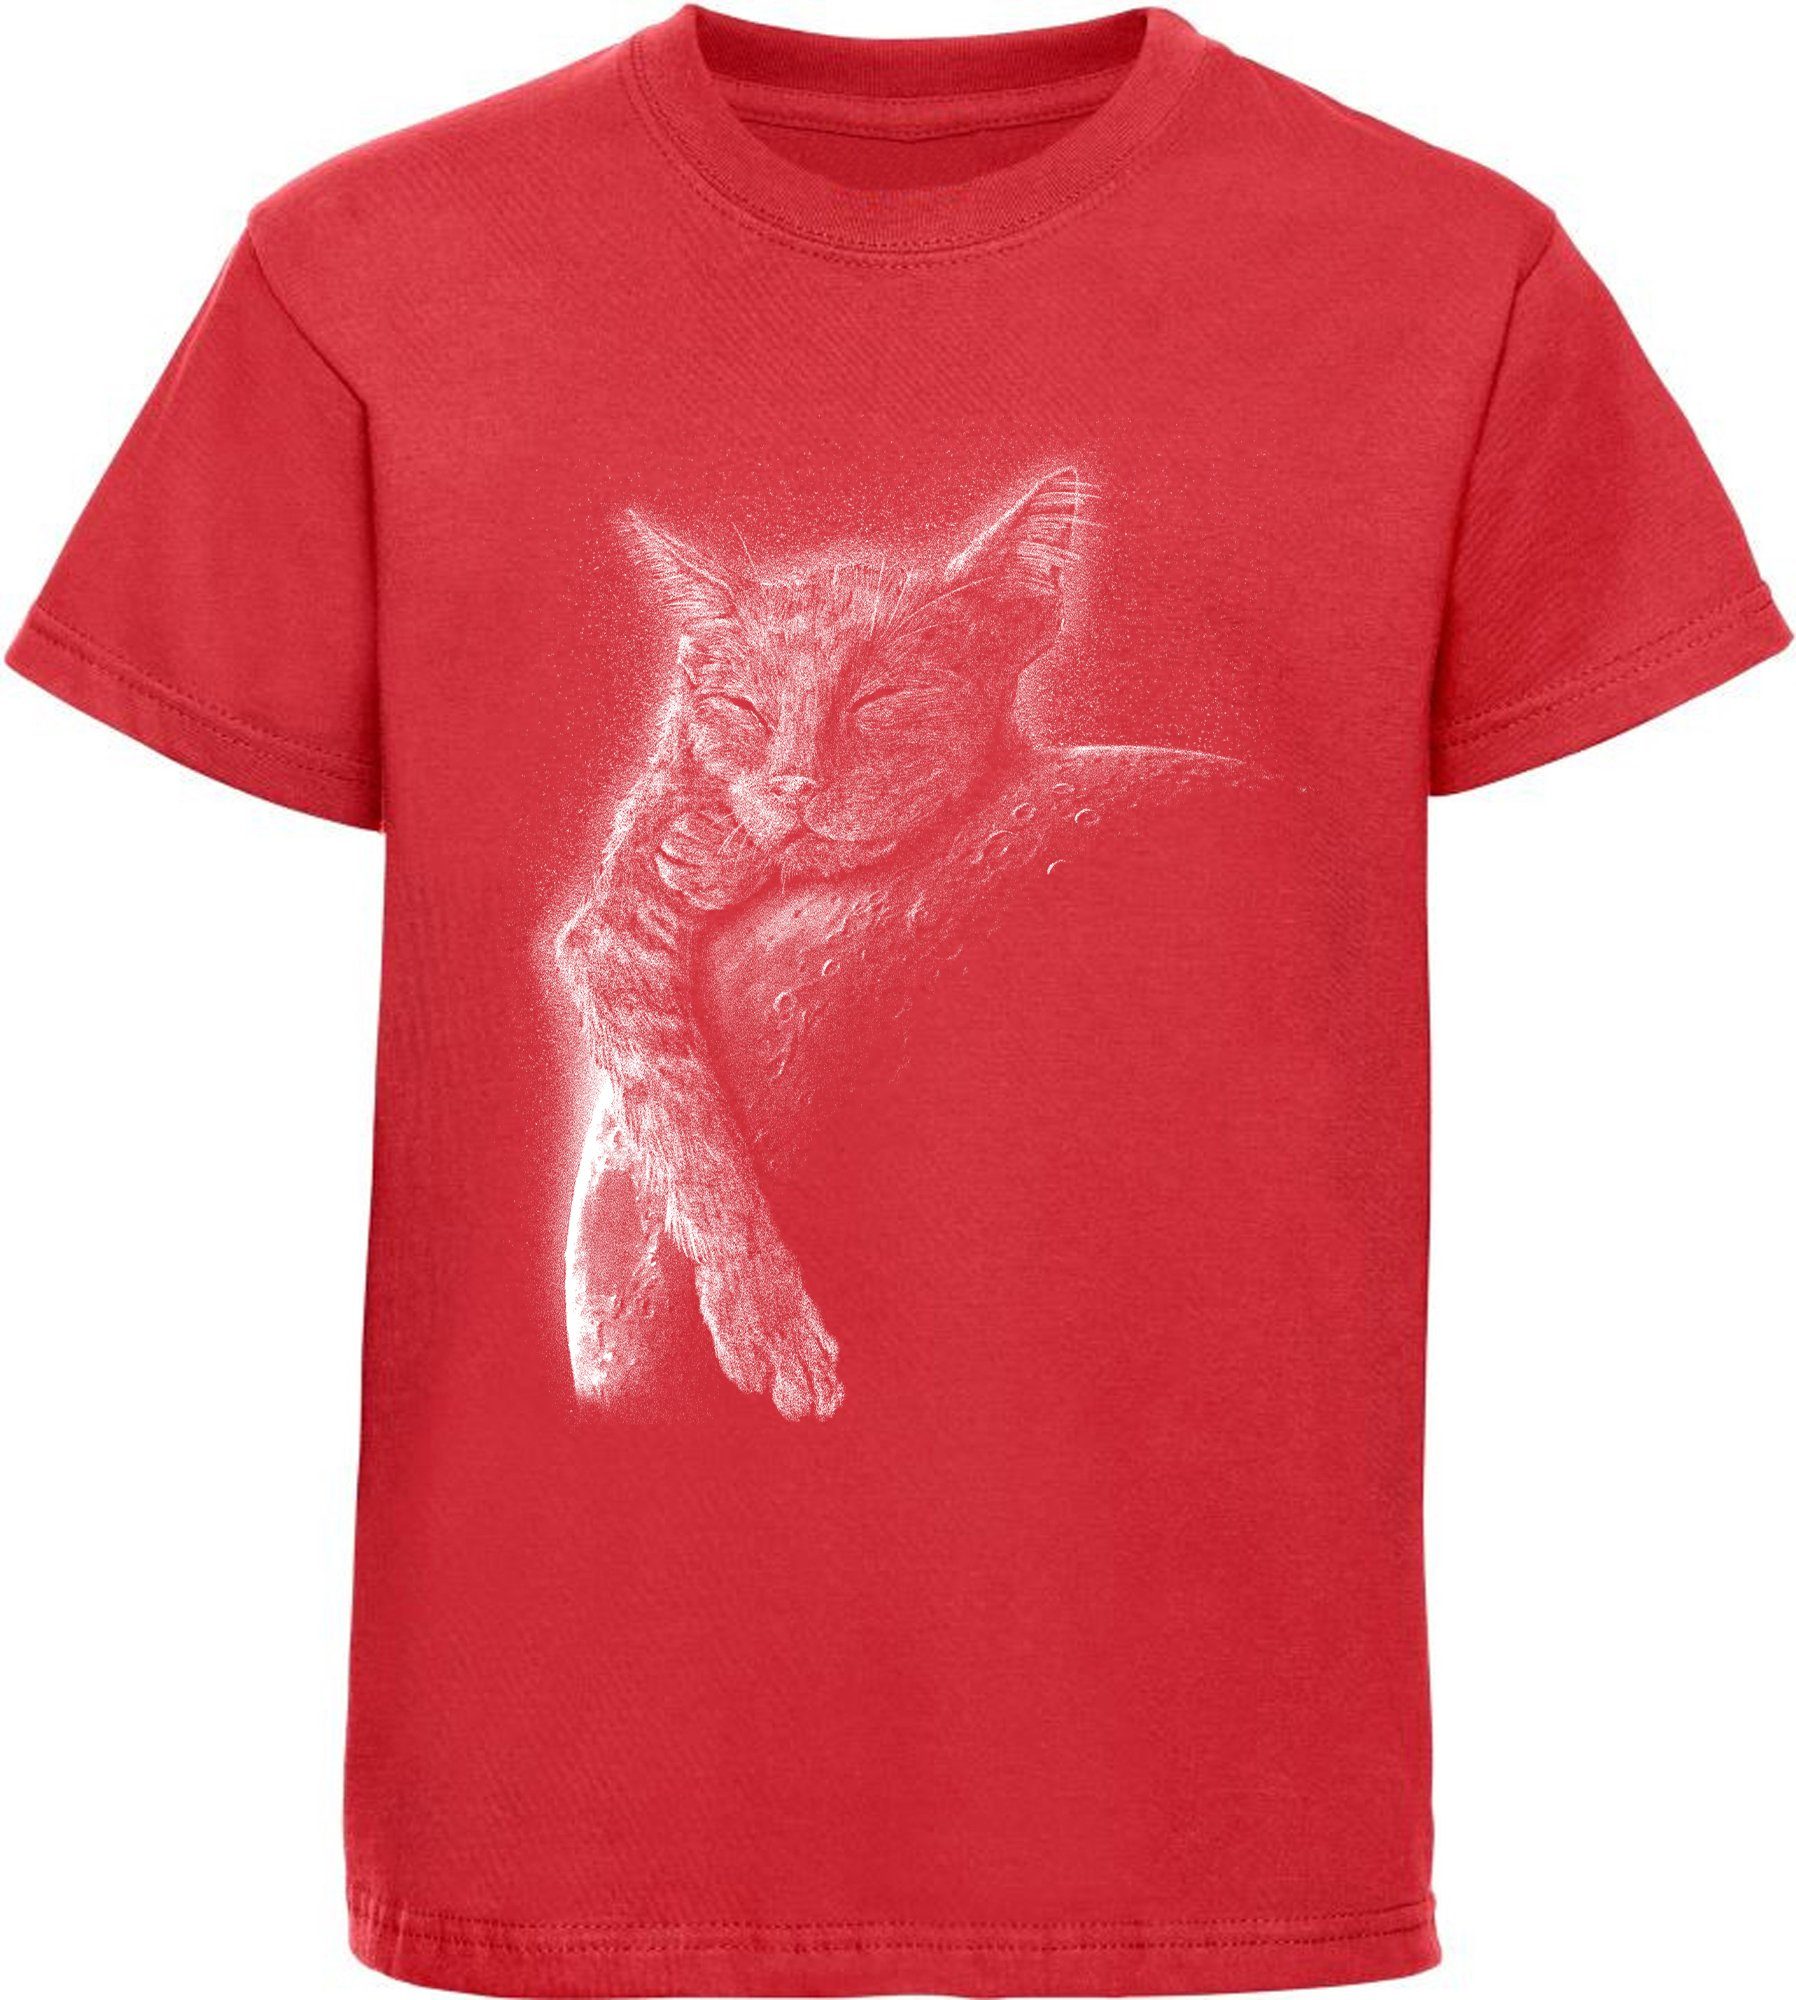 MyDesign24 Print-Shirt bedrucktes Mädchen T-Shirt Katze schlafend am Mond Baumwollshirt mit Aufdruck, schwarz, rot, i123 | T-Shirts